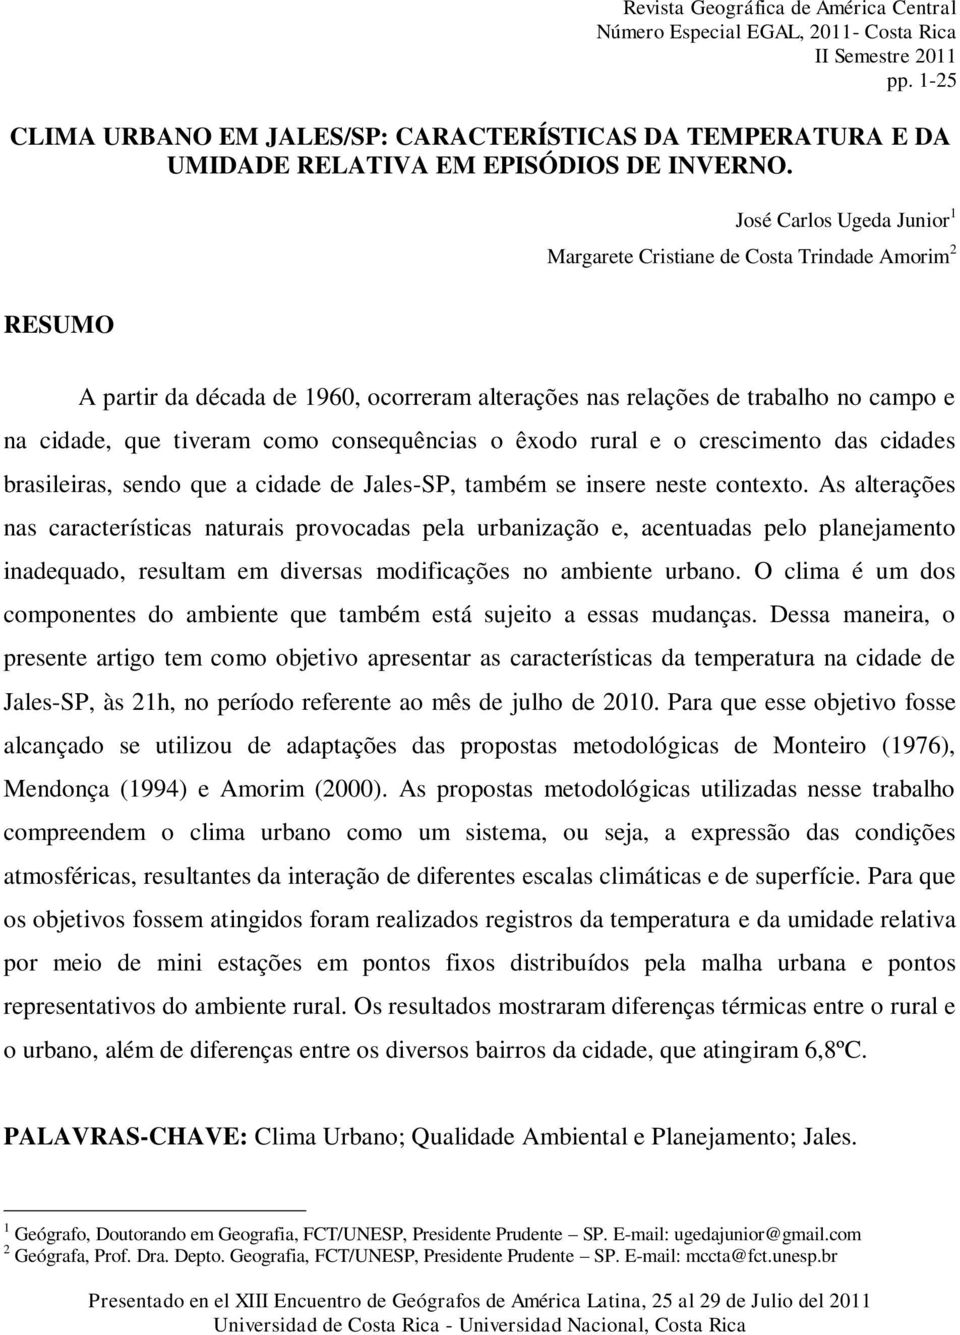 1 2 RESUMO A partir da década de 1960, ocorreram alterações nas relações de trabalho no campo e na cidade, que tiveram como consequências o êxodo rural e o crescimento das cidades brasileiras, sendo